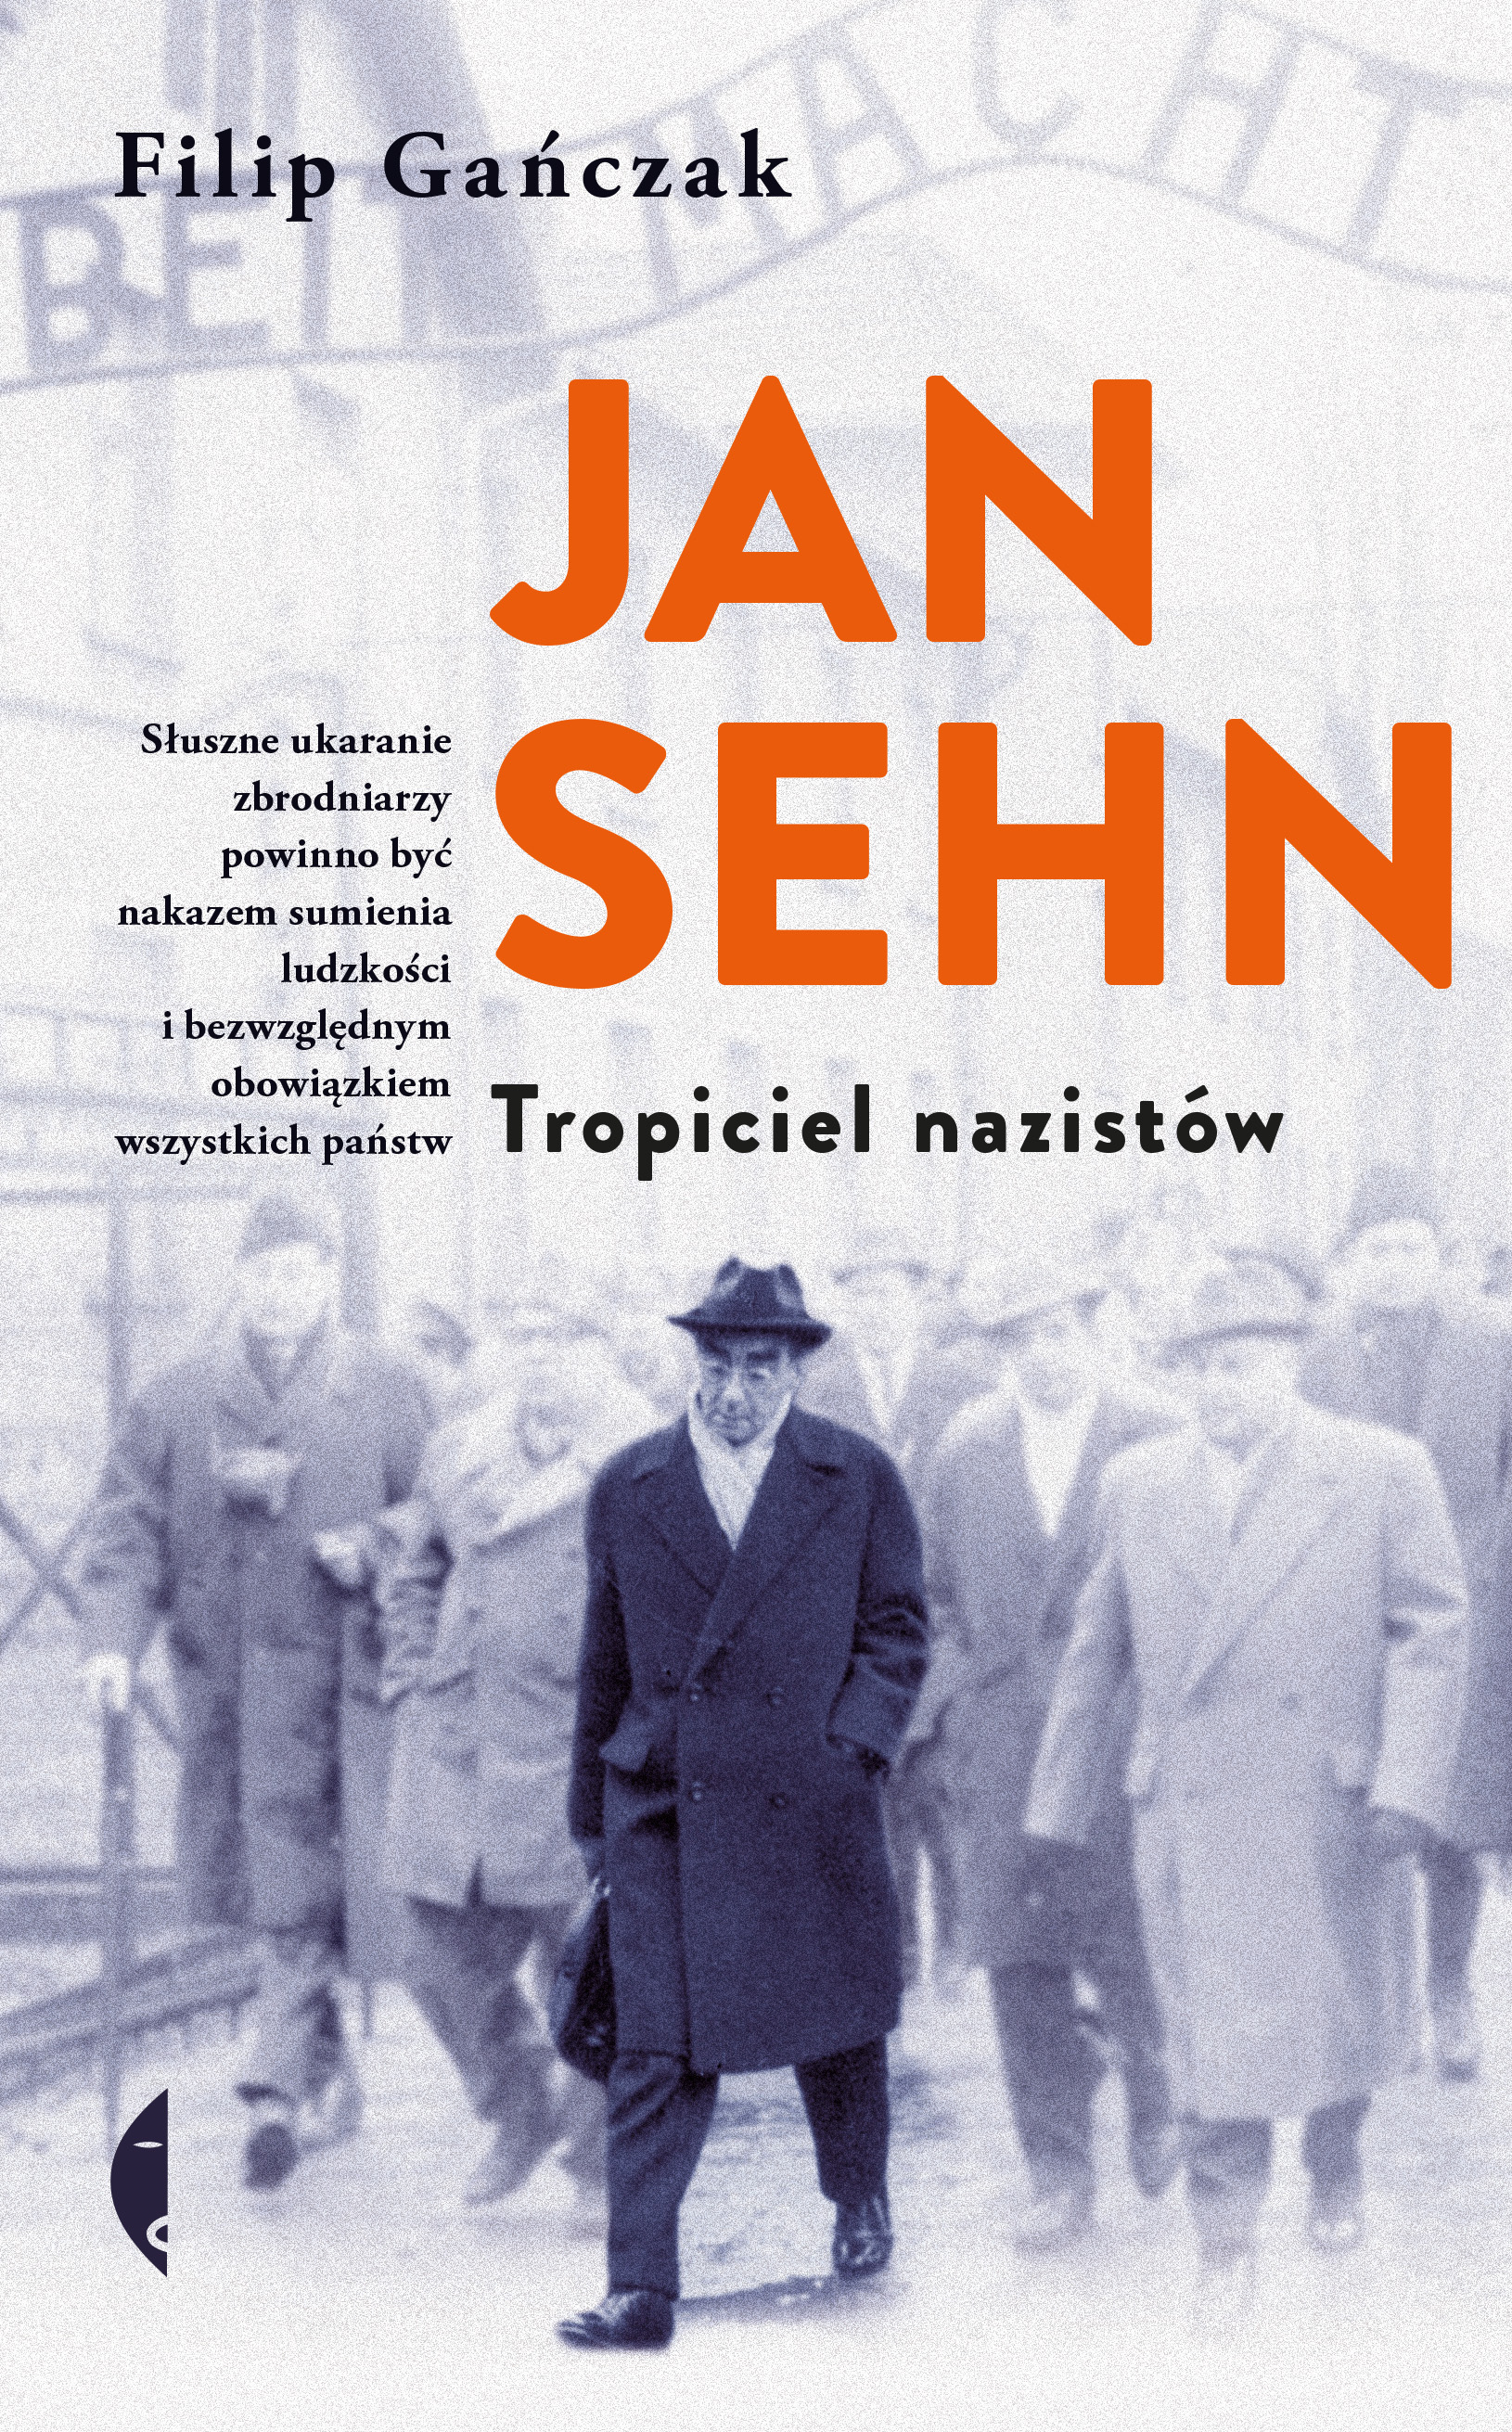 Jan Sehn. Tropiciel nazistów, Filip Gańczak, Wydawnictwo Czarne